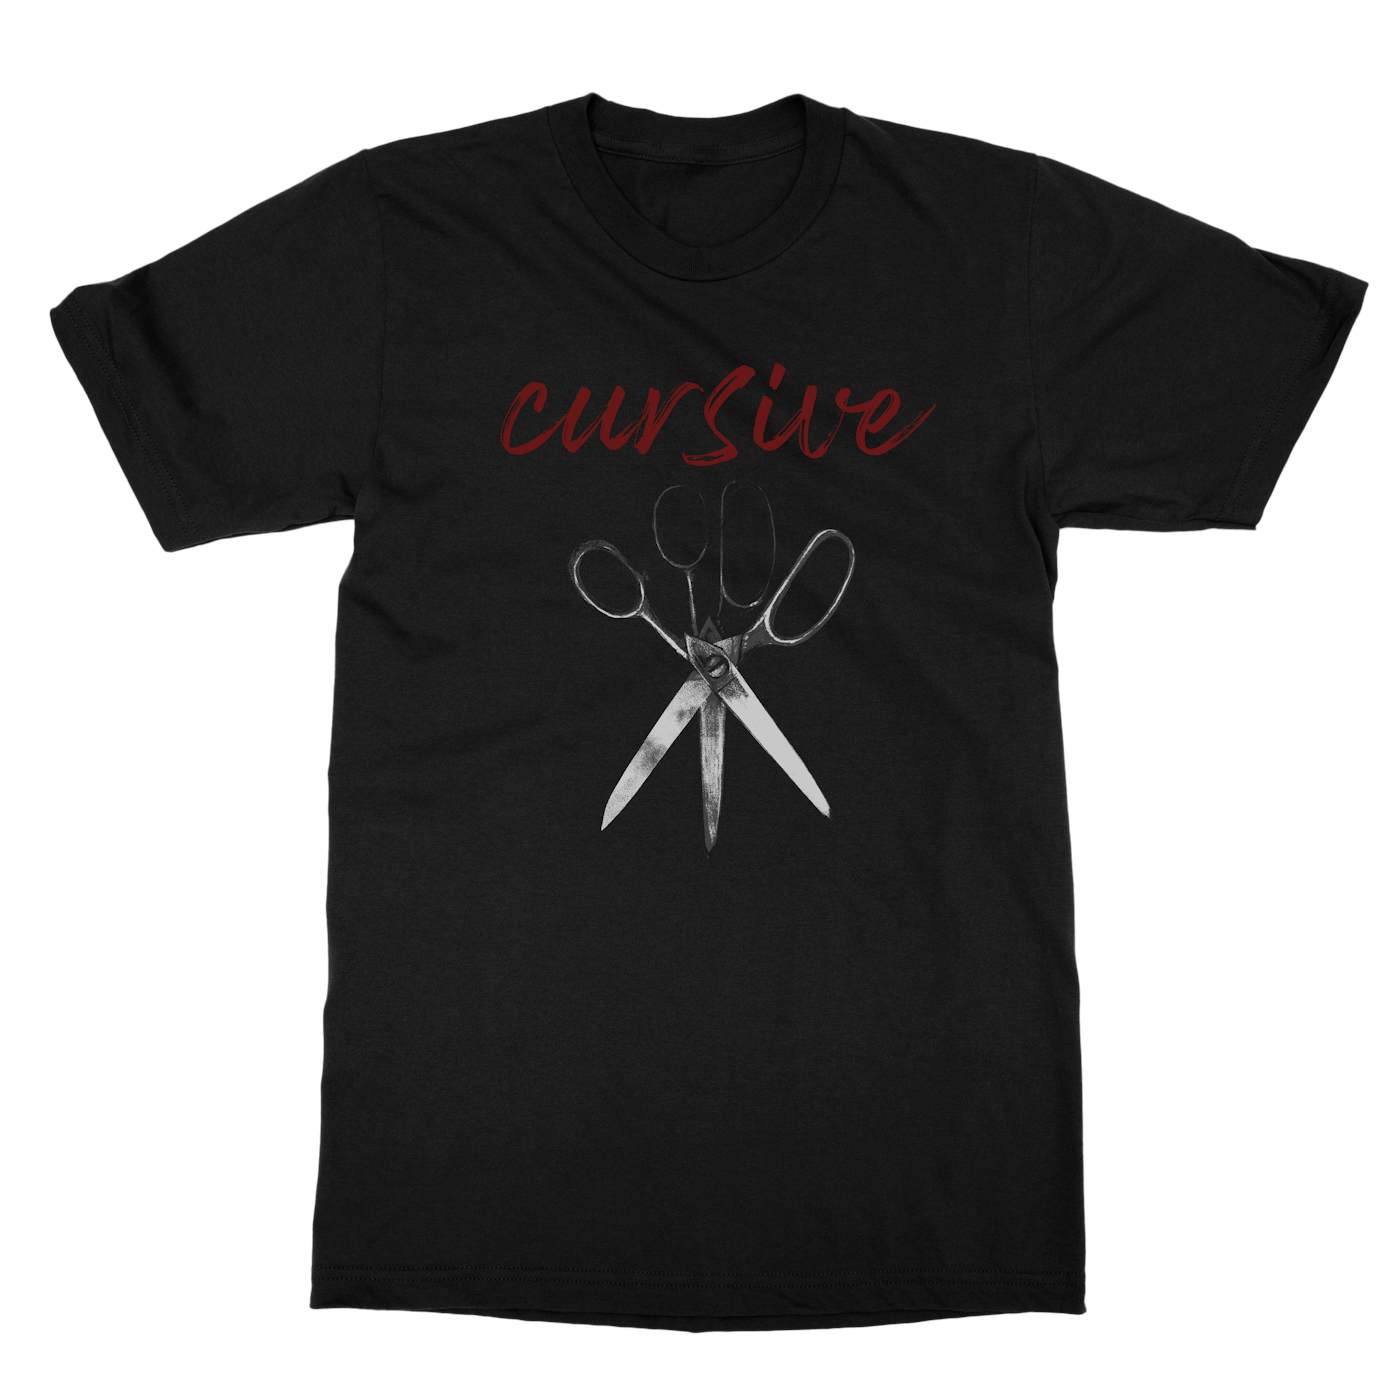 Cursive | Get Fixed 3 Color T-Shirt